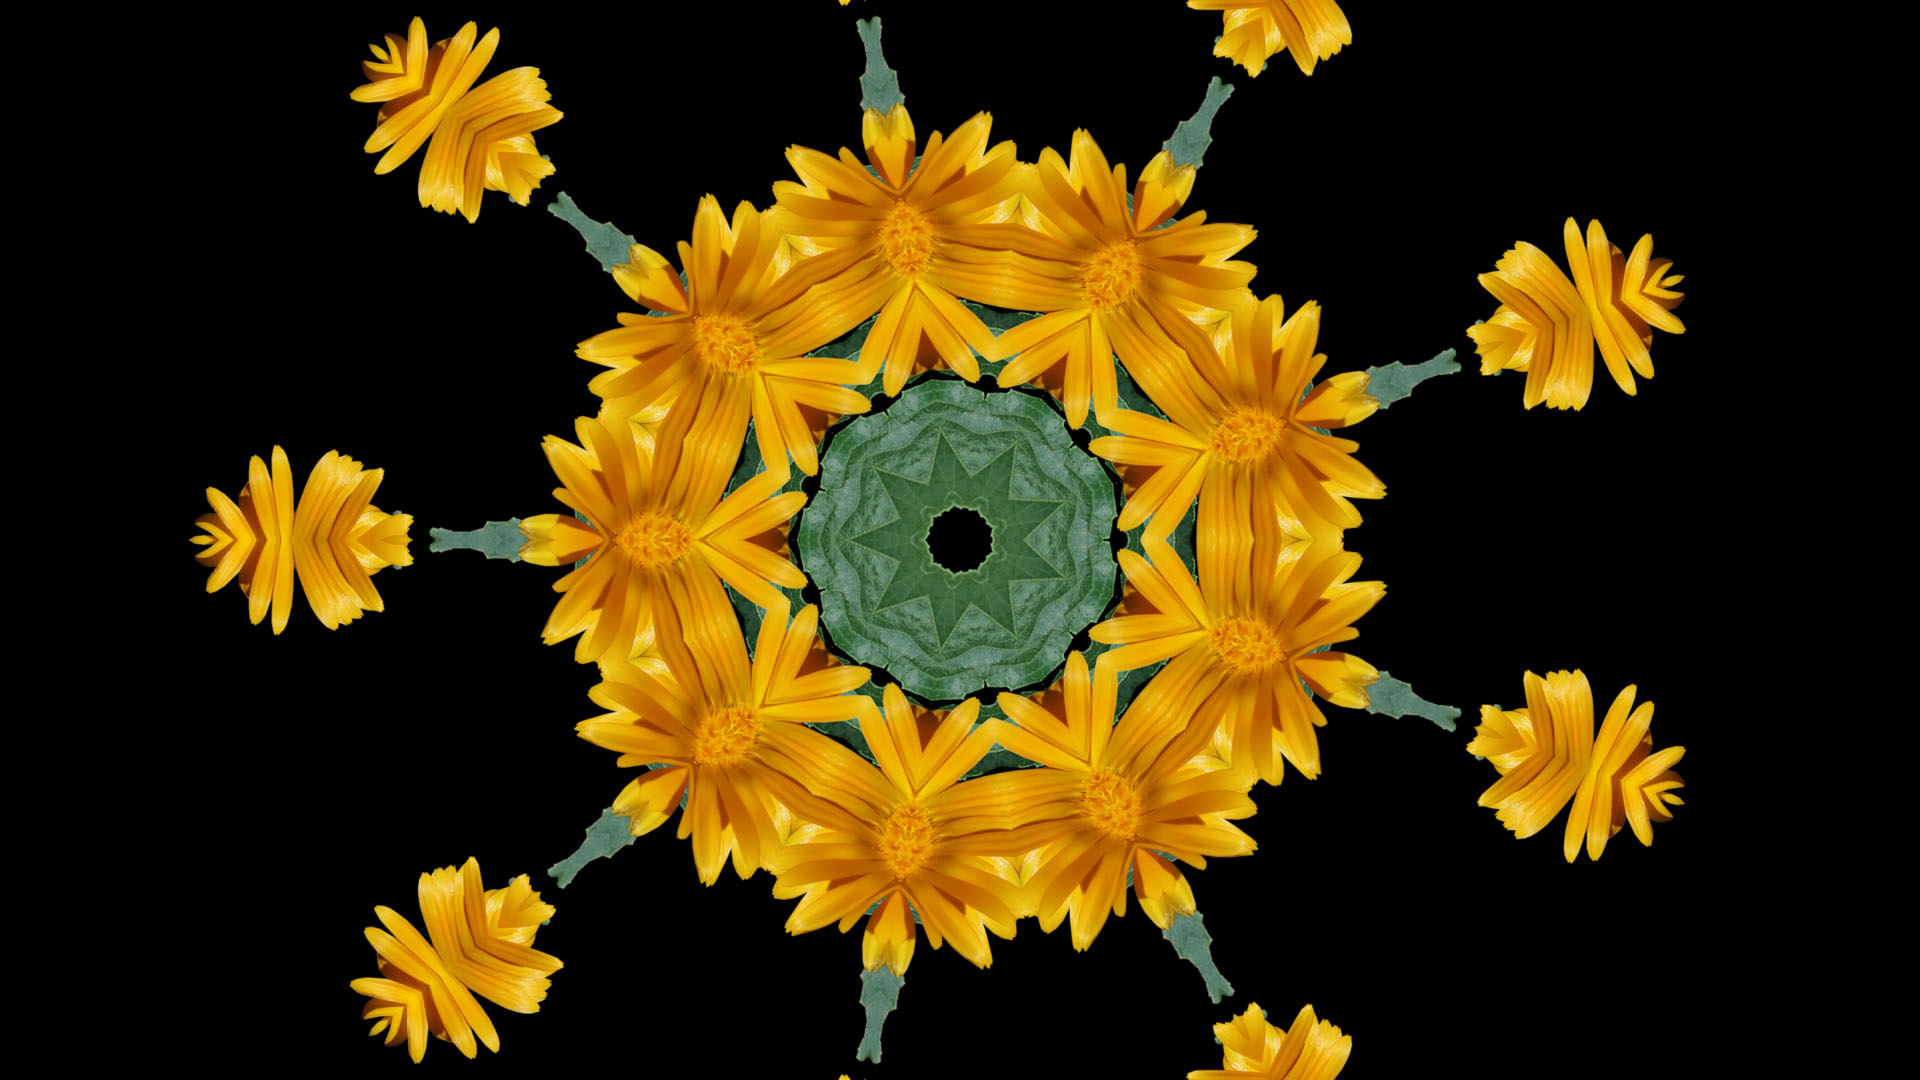 Abstract Digital Art Kaleidoscope Yellow 1920x1080